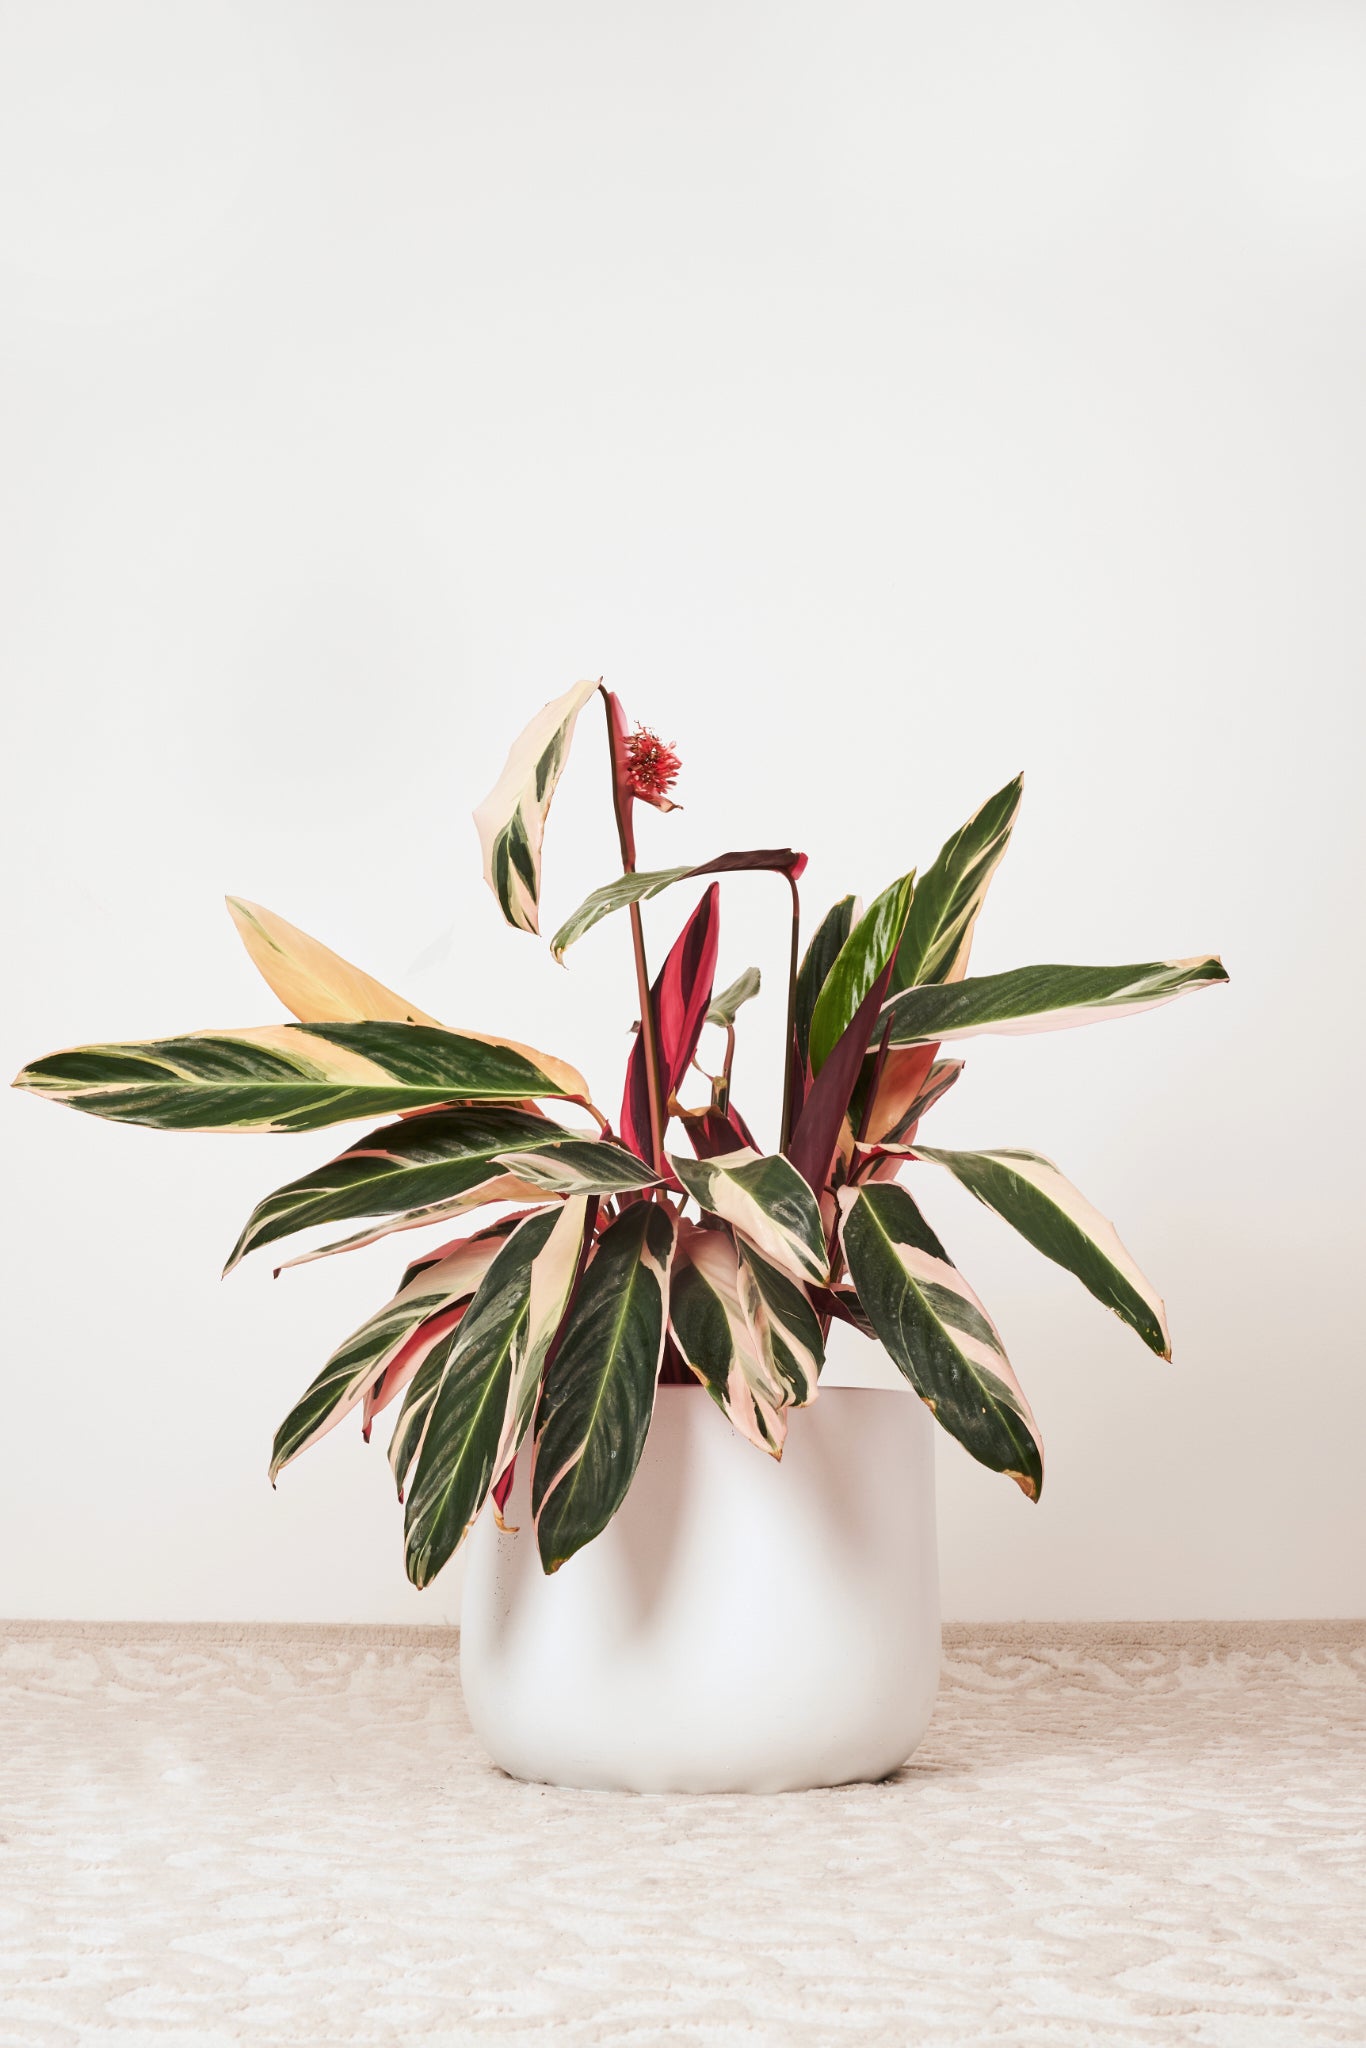 Tricolour stromanthe plant